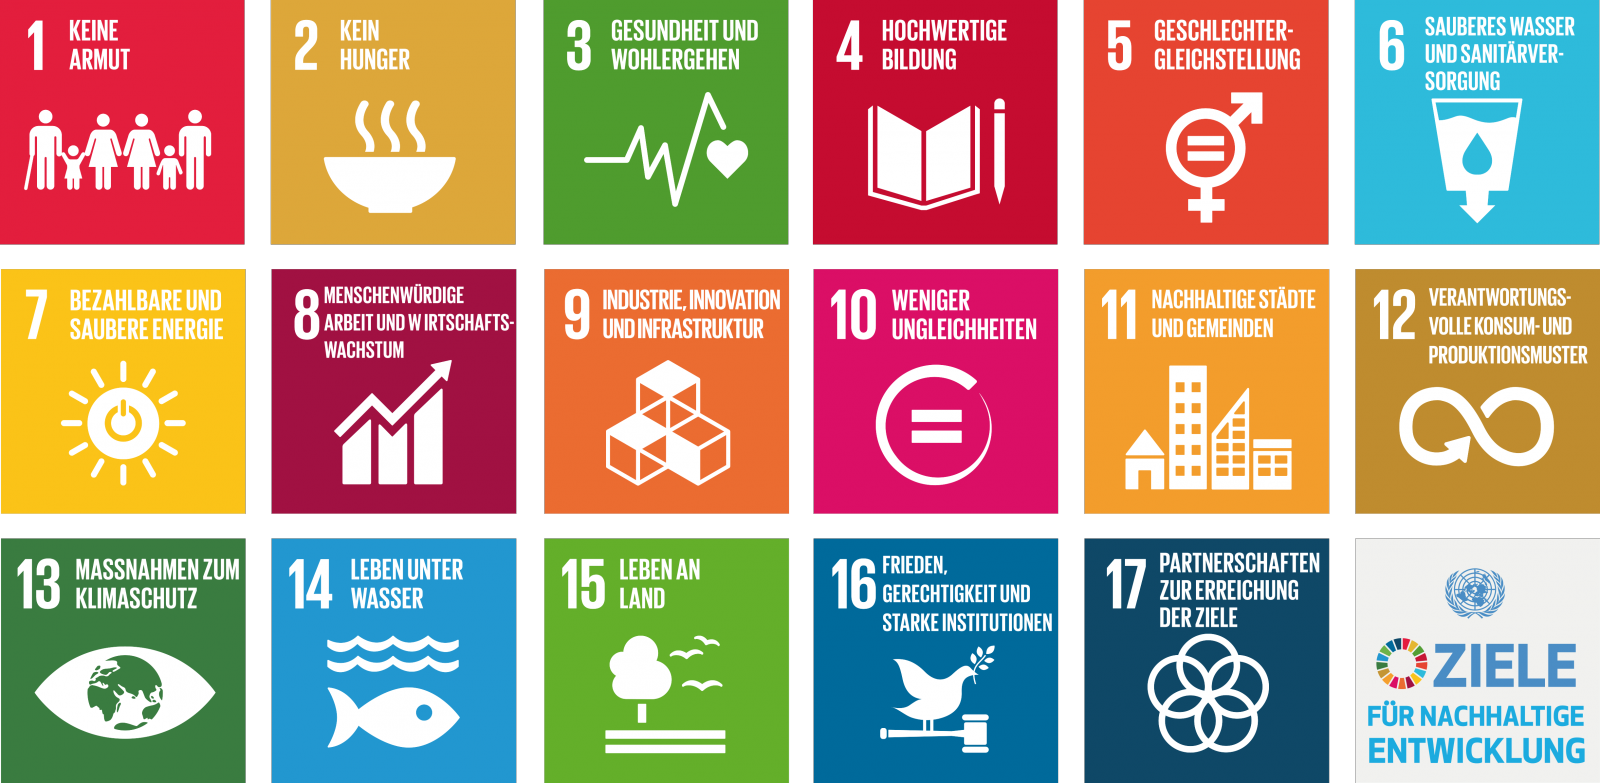 Die Ziele für nachhaltige Entwicklung